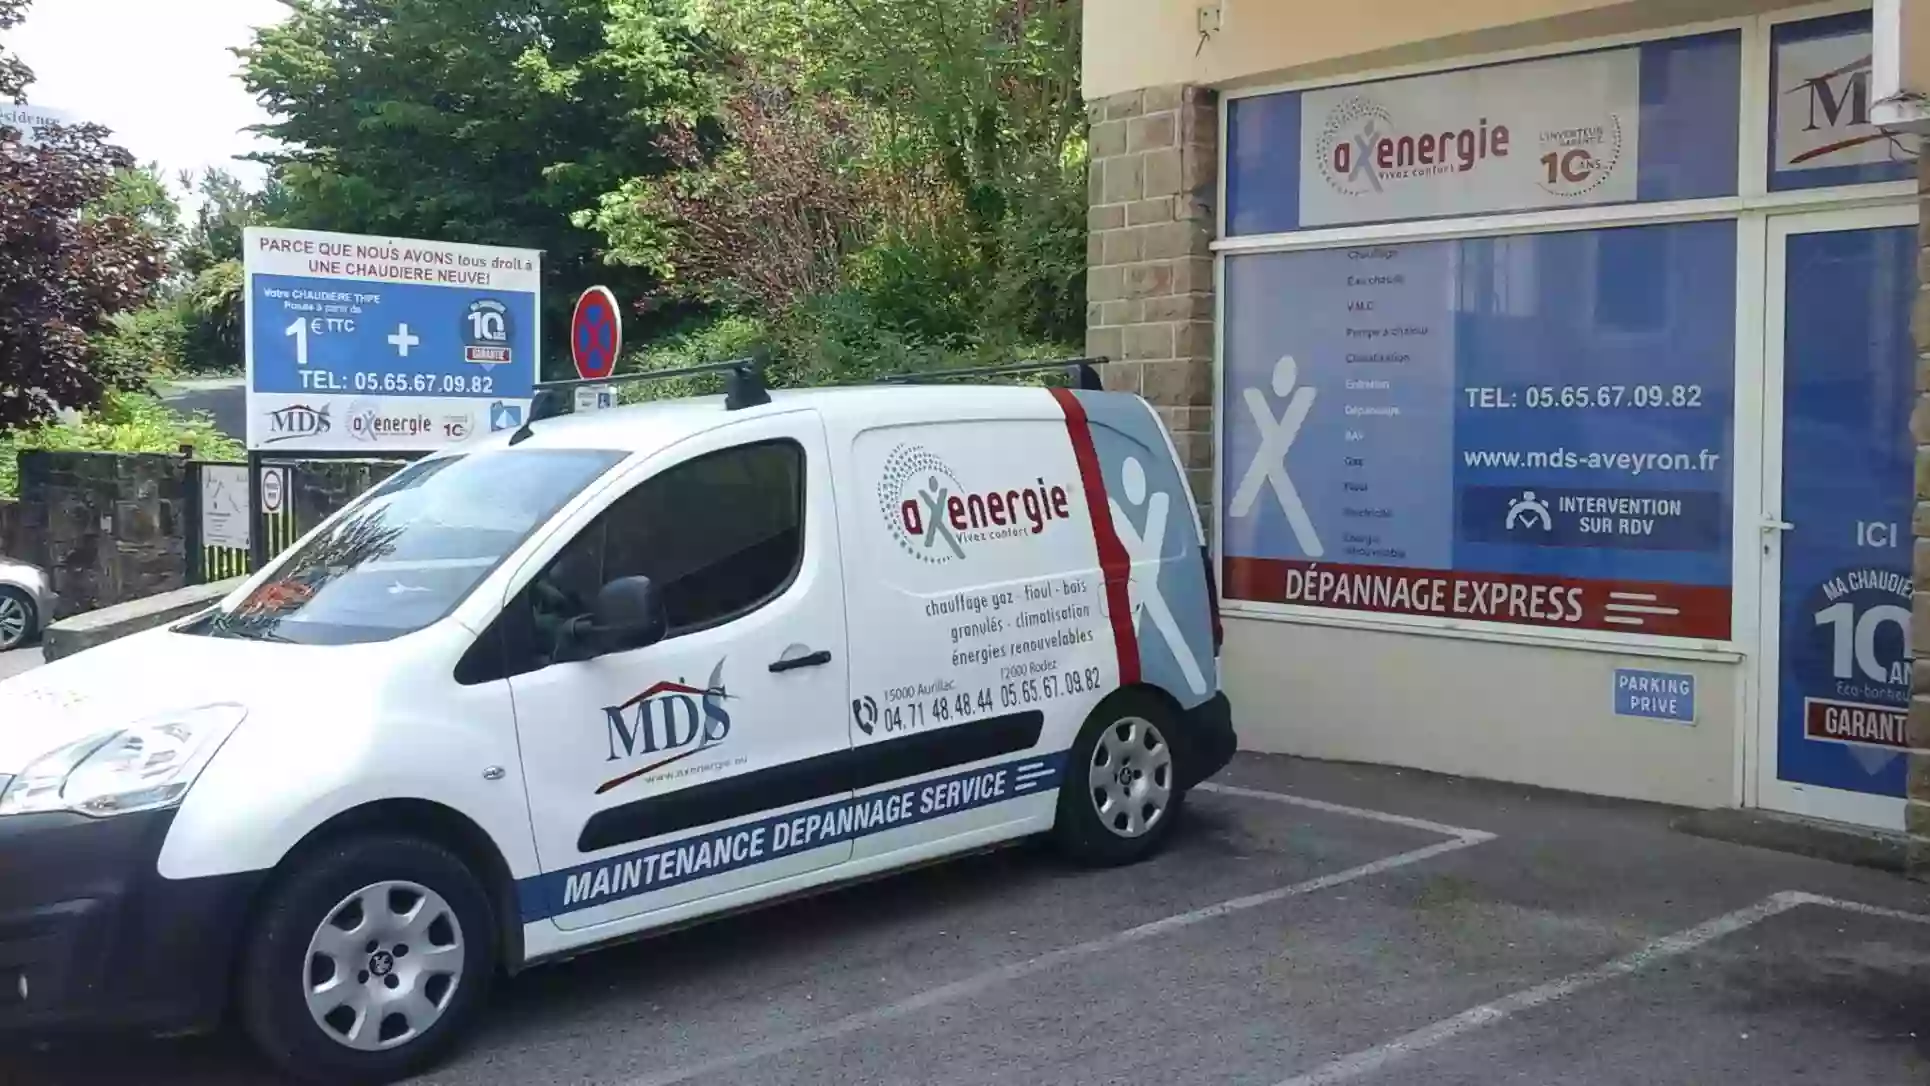 M.D.S. Axenergie Aveyron (Maintenance Dépannage Services)